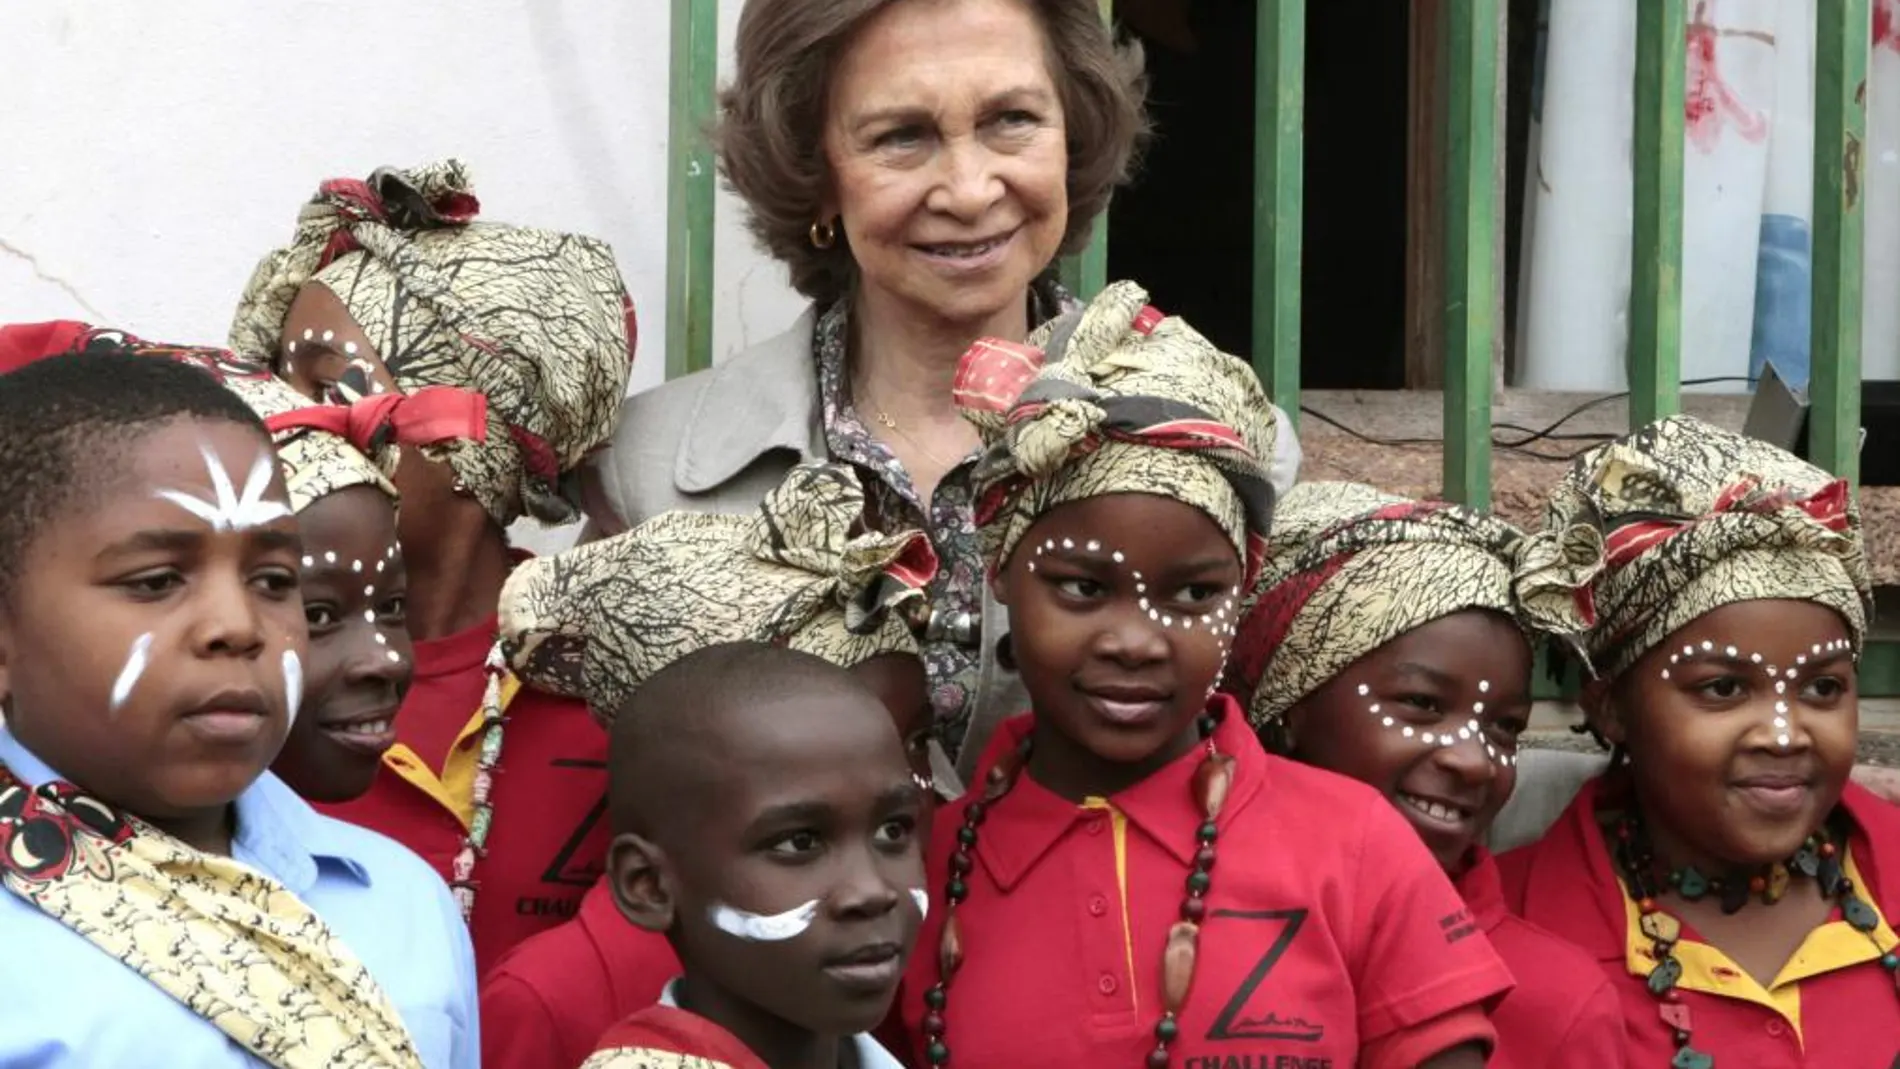 La Reina junto a unos niños en una aldea del municipio de Namaacha, que visitó para comprobar los resultados de la cooperación española en Mozambique